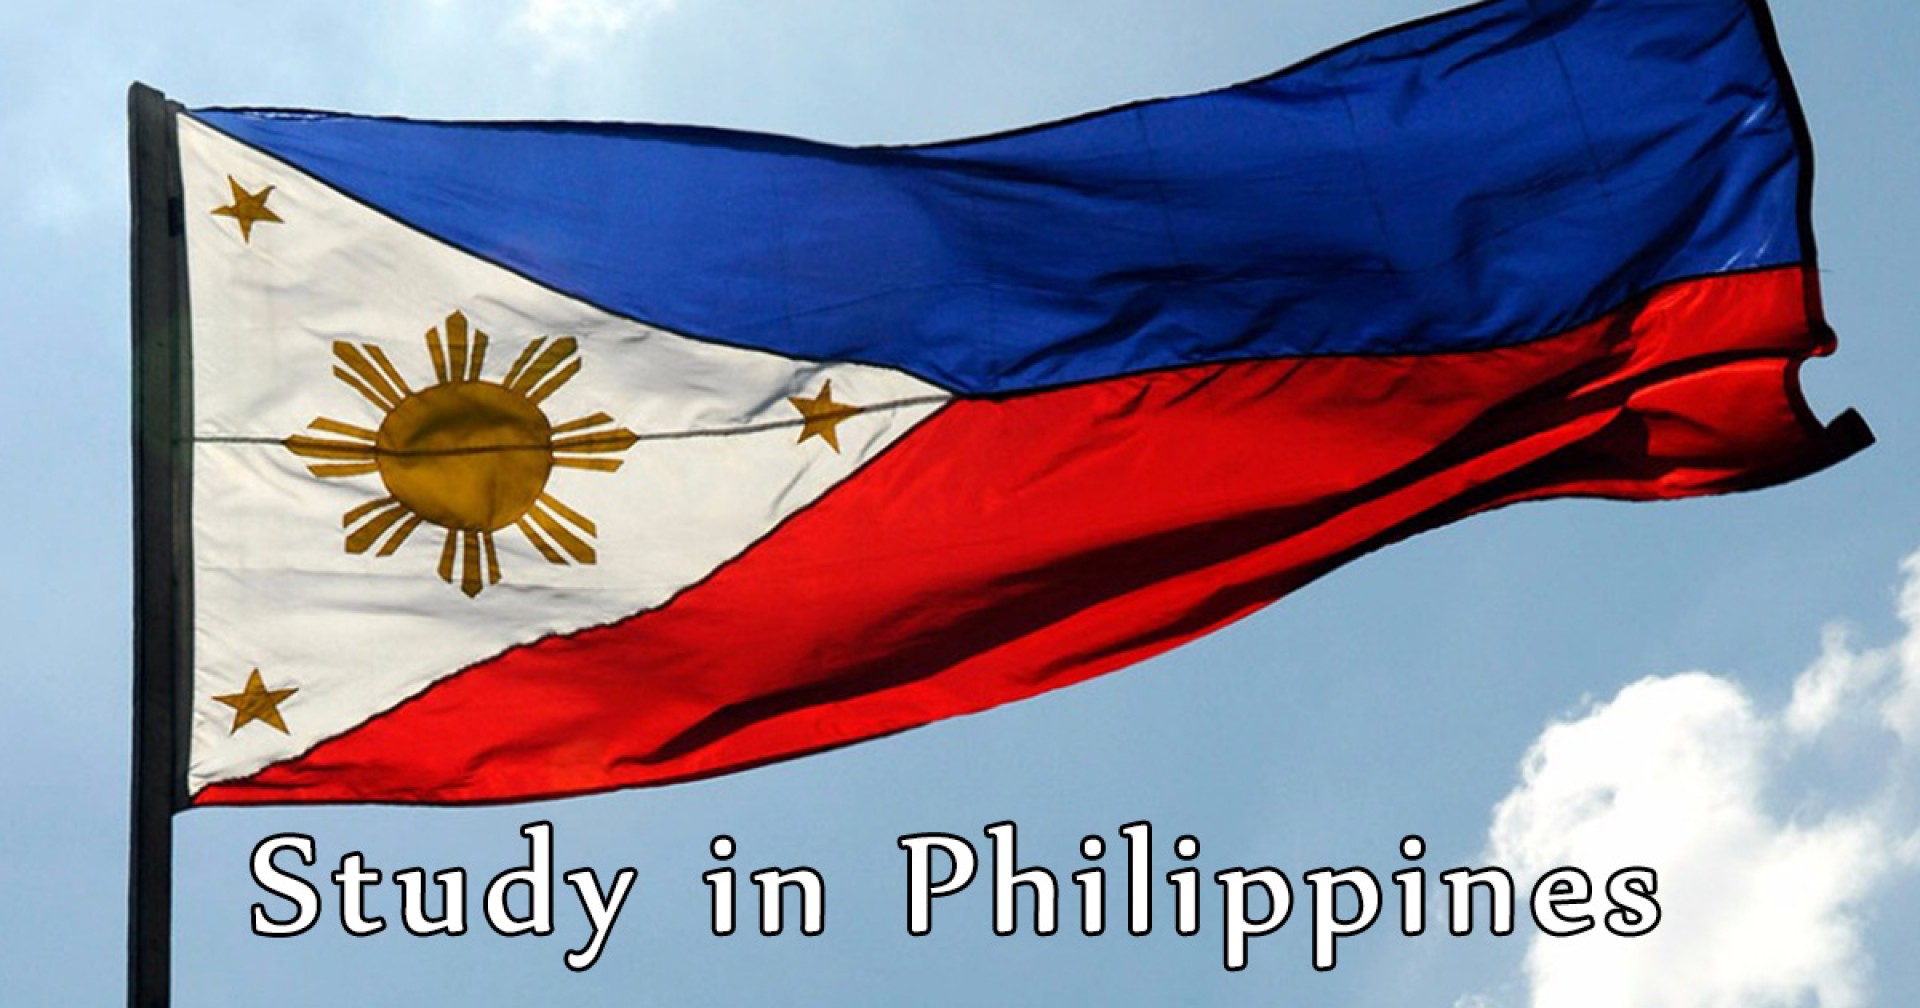 Những công ty chuyên tư vấn du học Philippines đáng tin cậy mà bạn nên biết